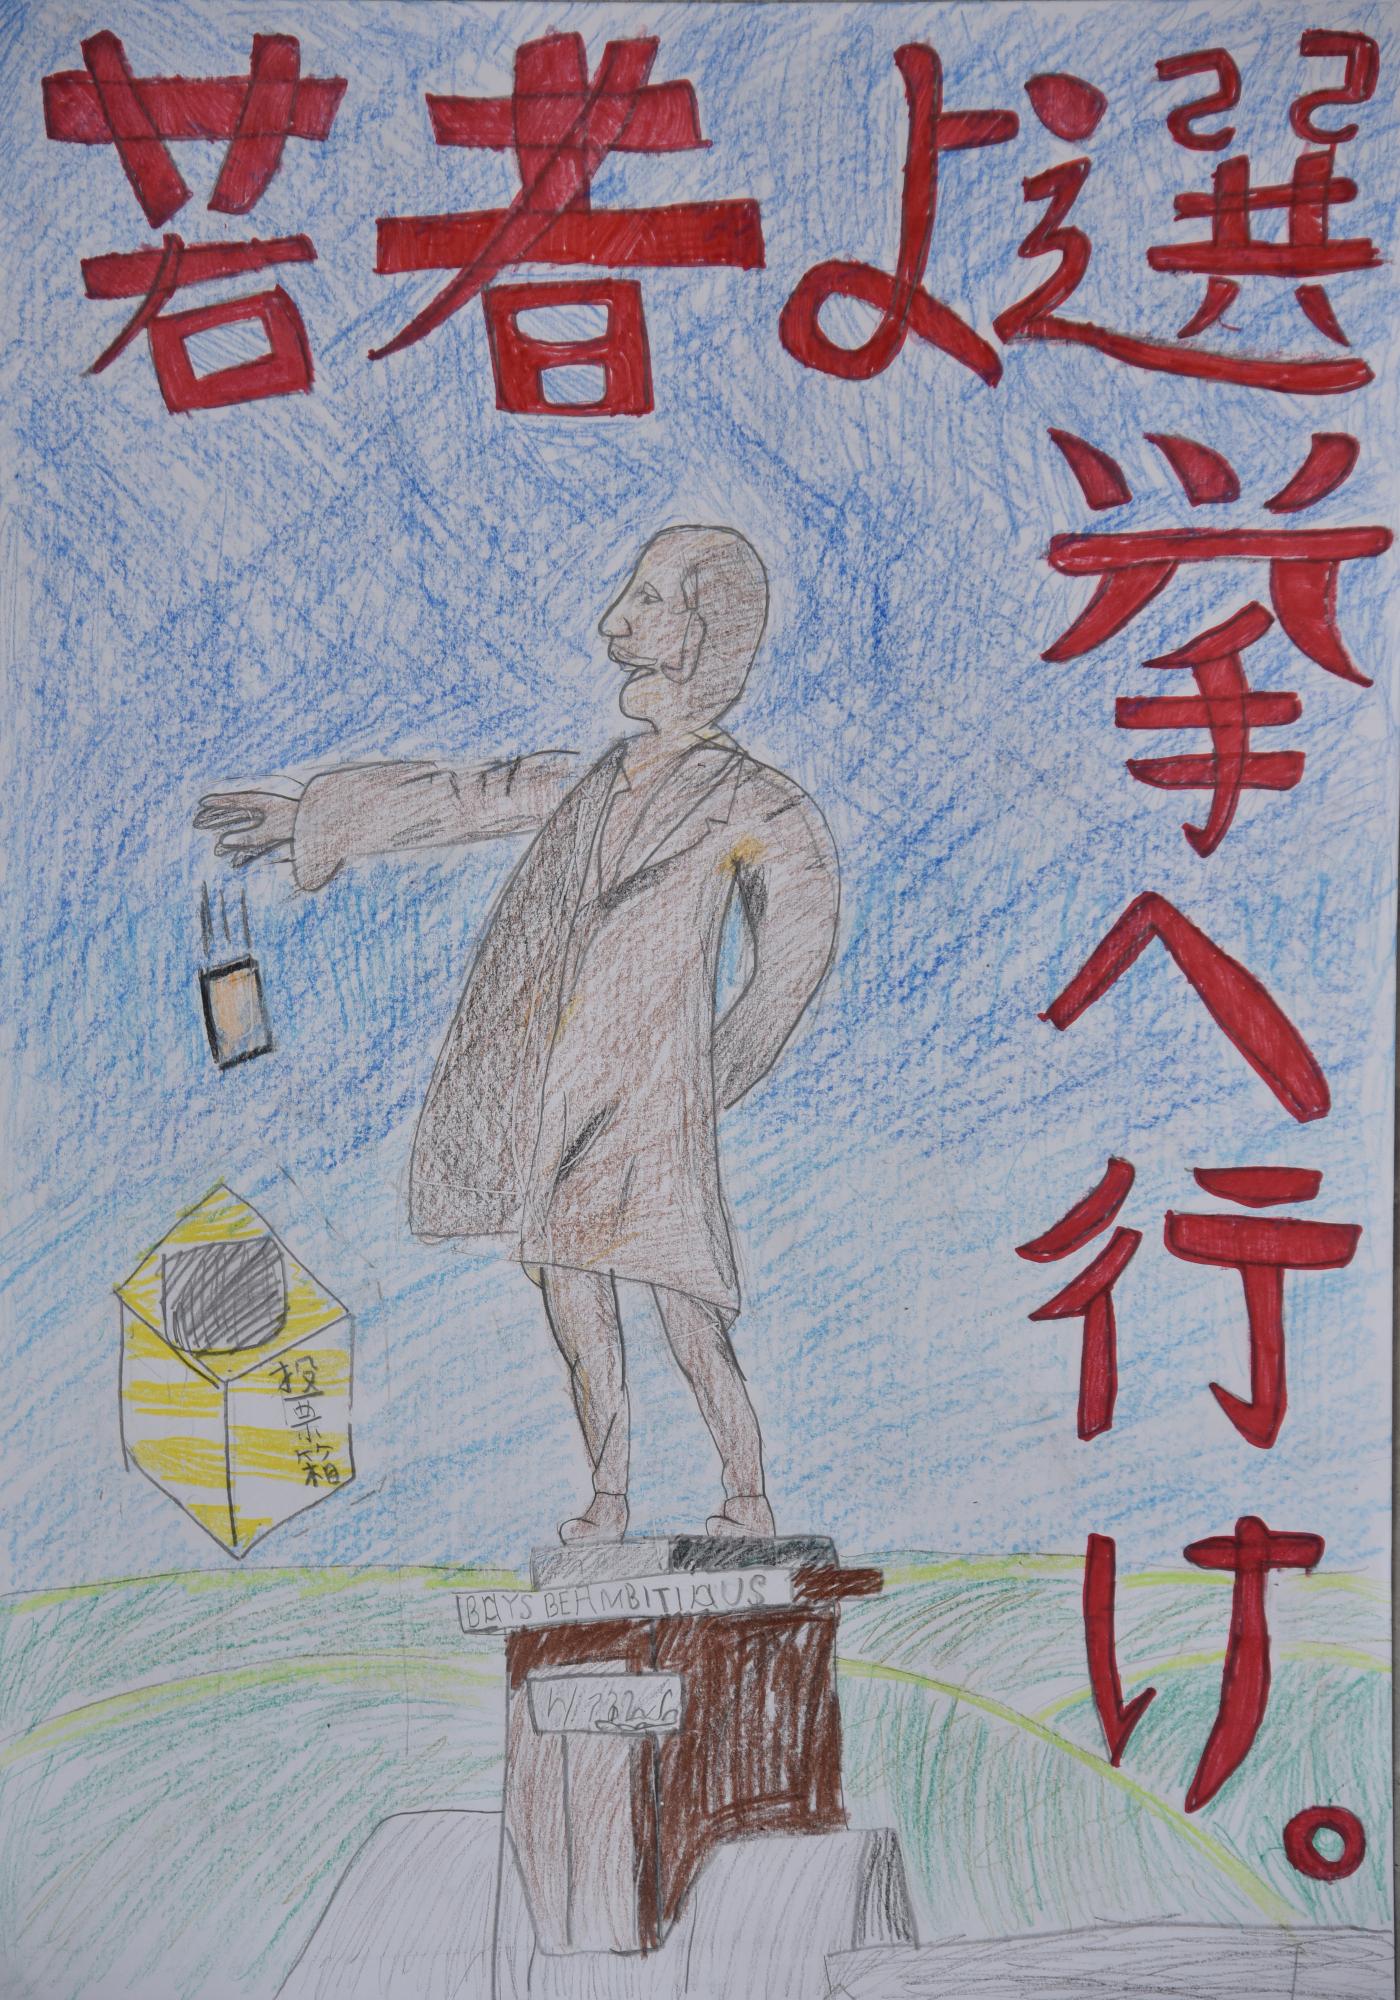 「若者よ選挙へ行け」空と大地を背景にクラーク博士風の銅像が投票しているポスター